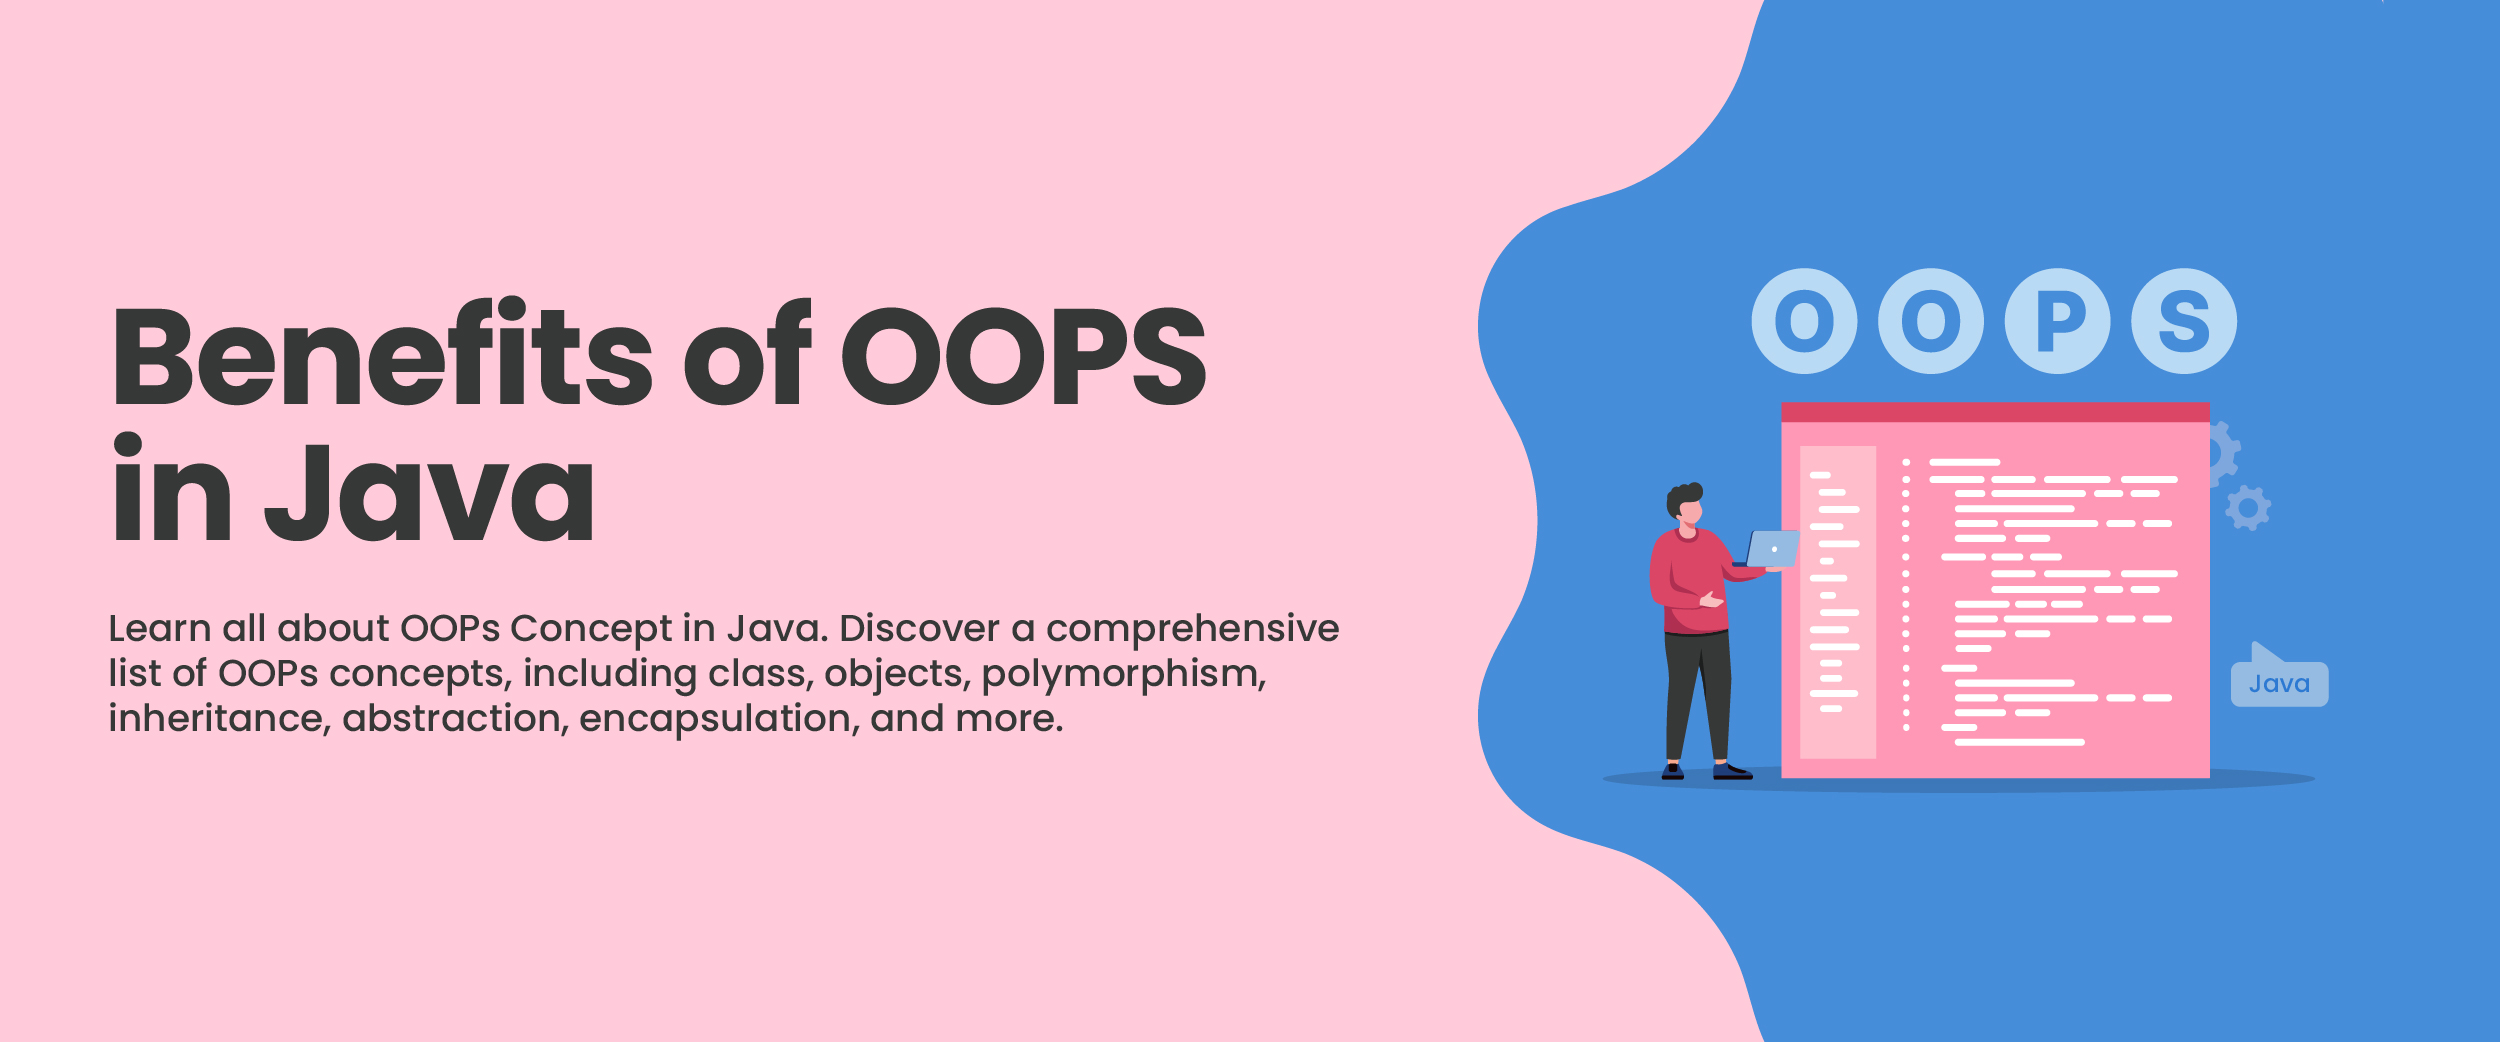 Benefits of OOPs in Java